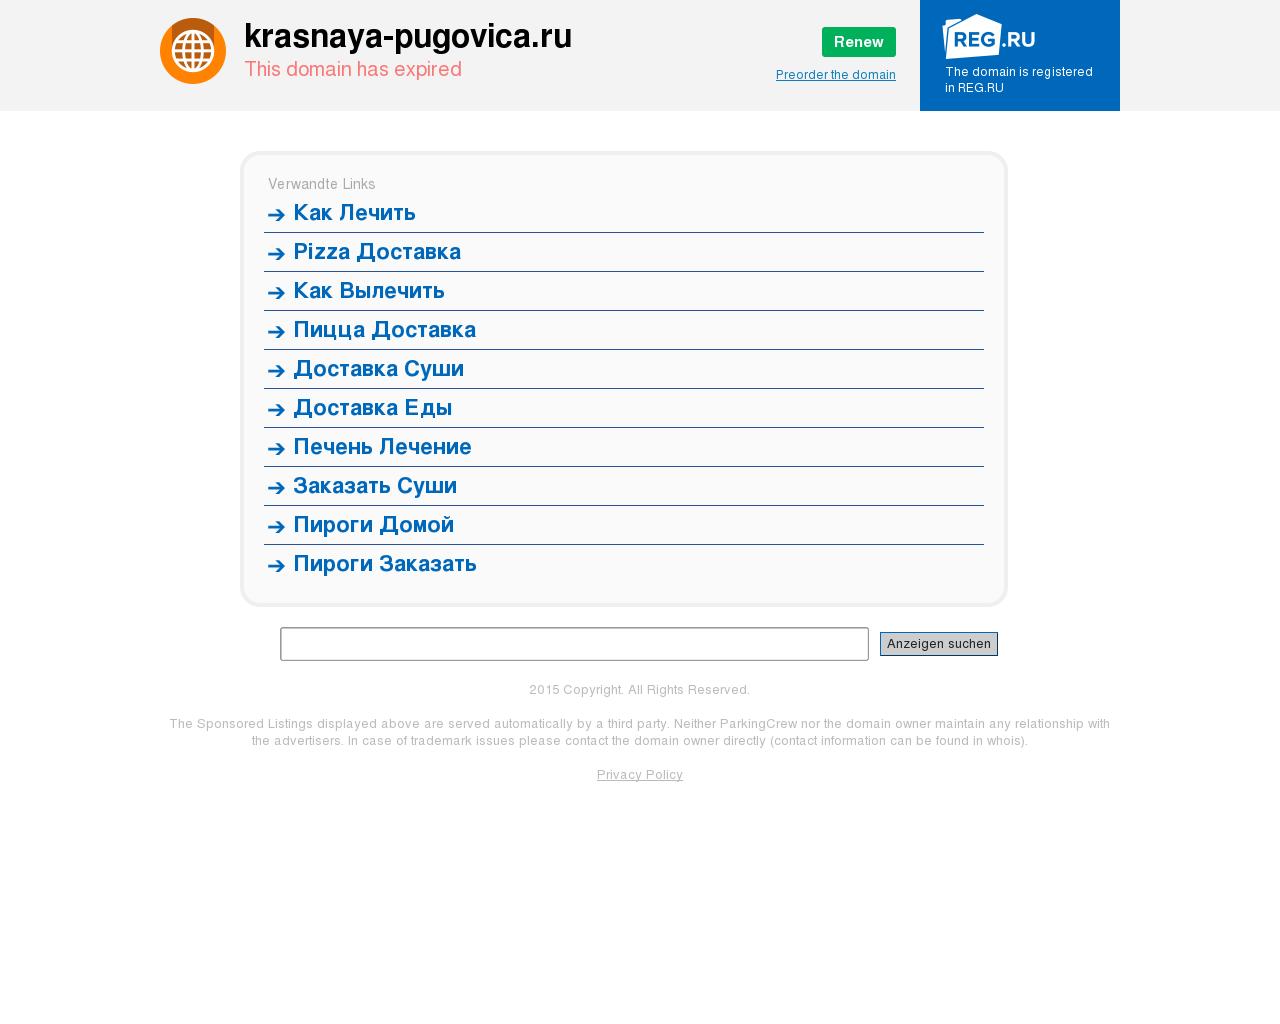 Изображение сайта krasnaya-pugovica.ru в разрешении 1280x1024